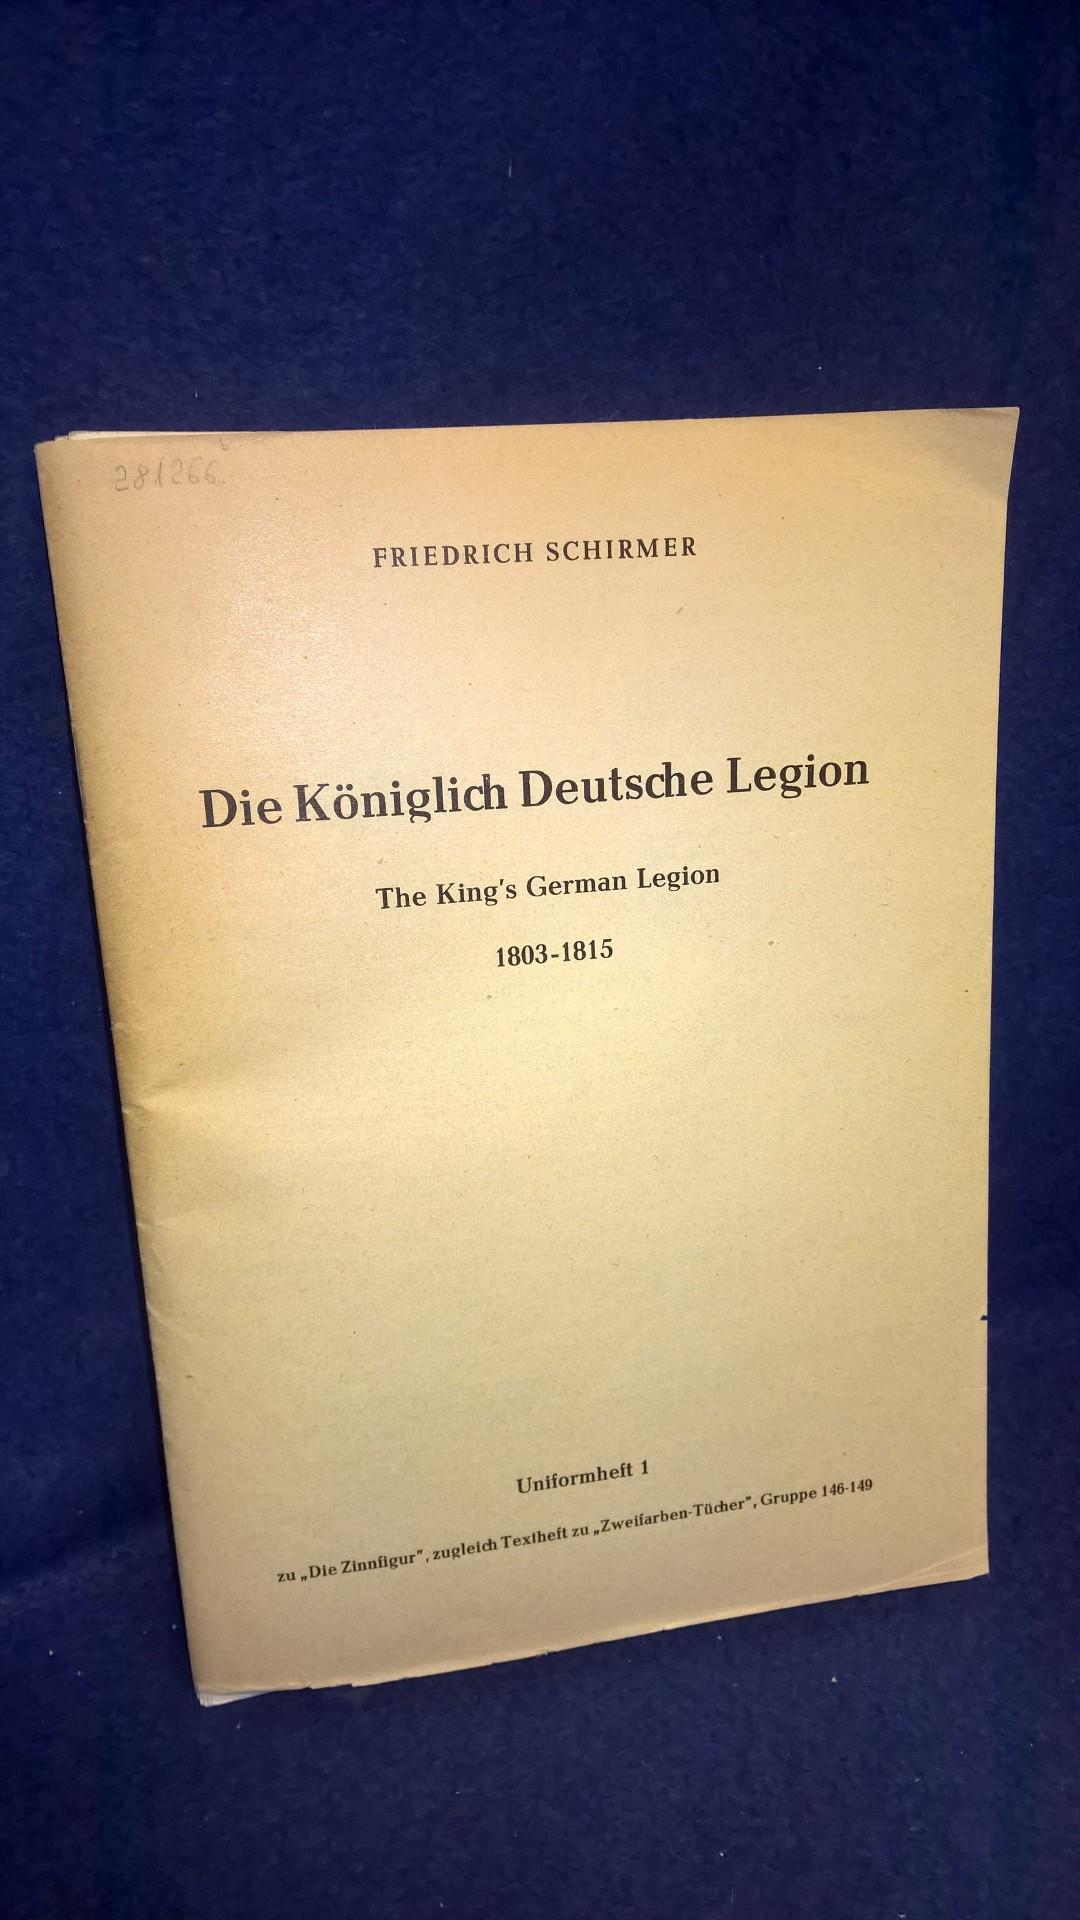 Die Königlich Deutsche Legion 1803-1815. Aus der Reihe " Die Zinnfigur - Uniformheft 1".